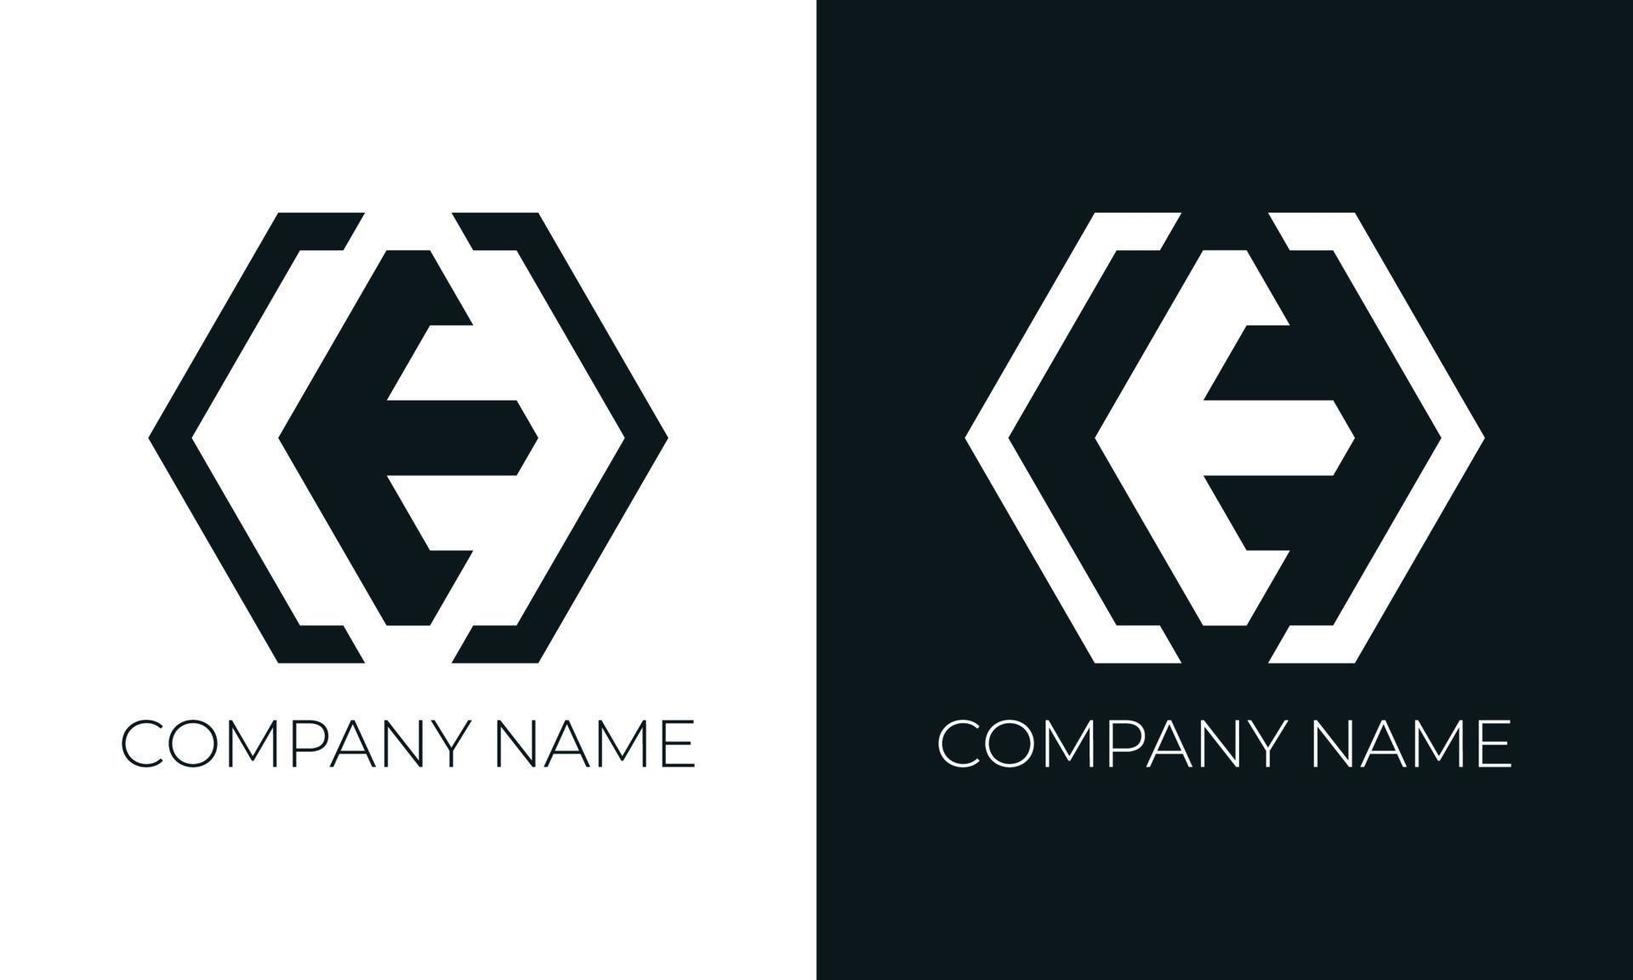 modelo de design de vetor de logotipo de letra inicial e. tipografia moderna criativa e moderna e cores pretas.